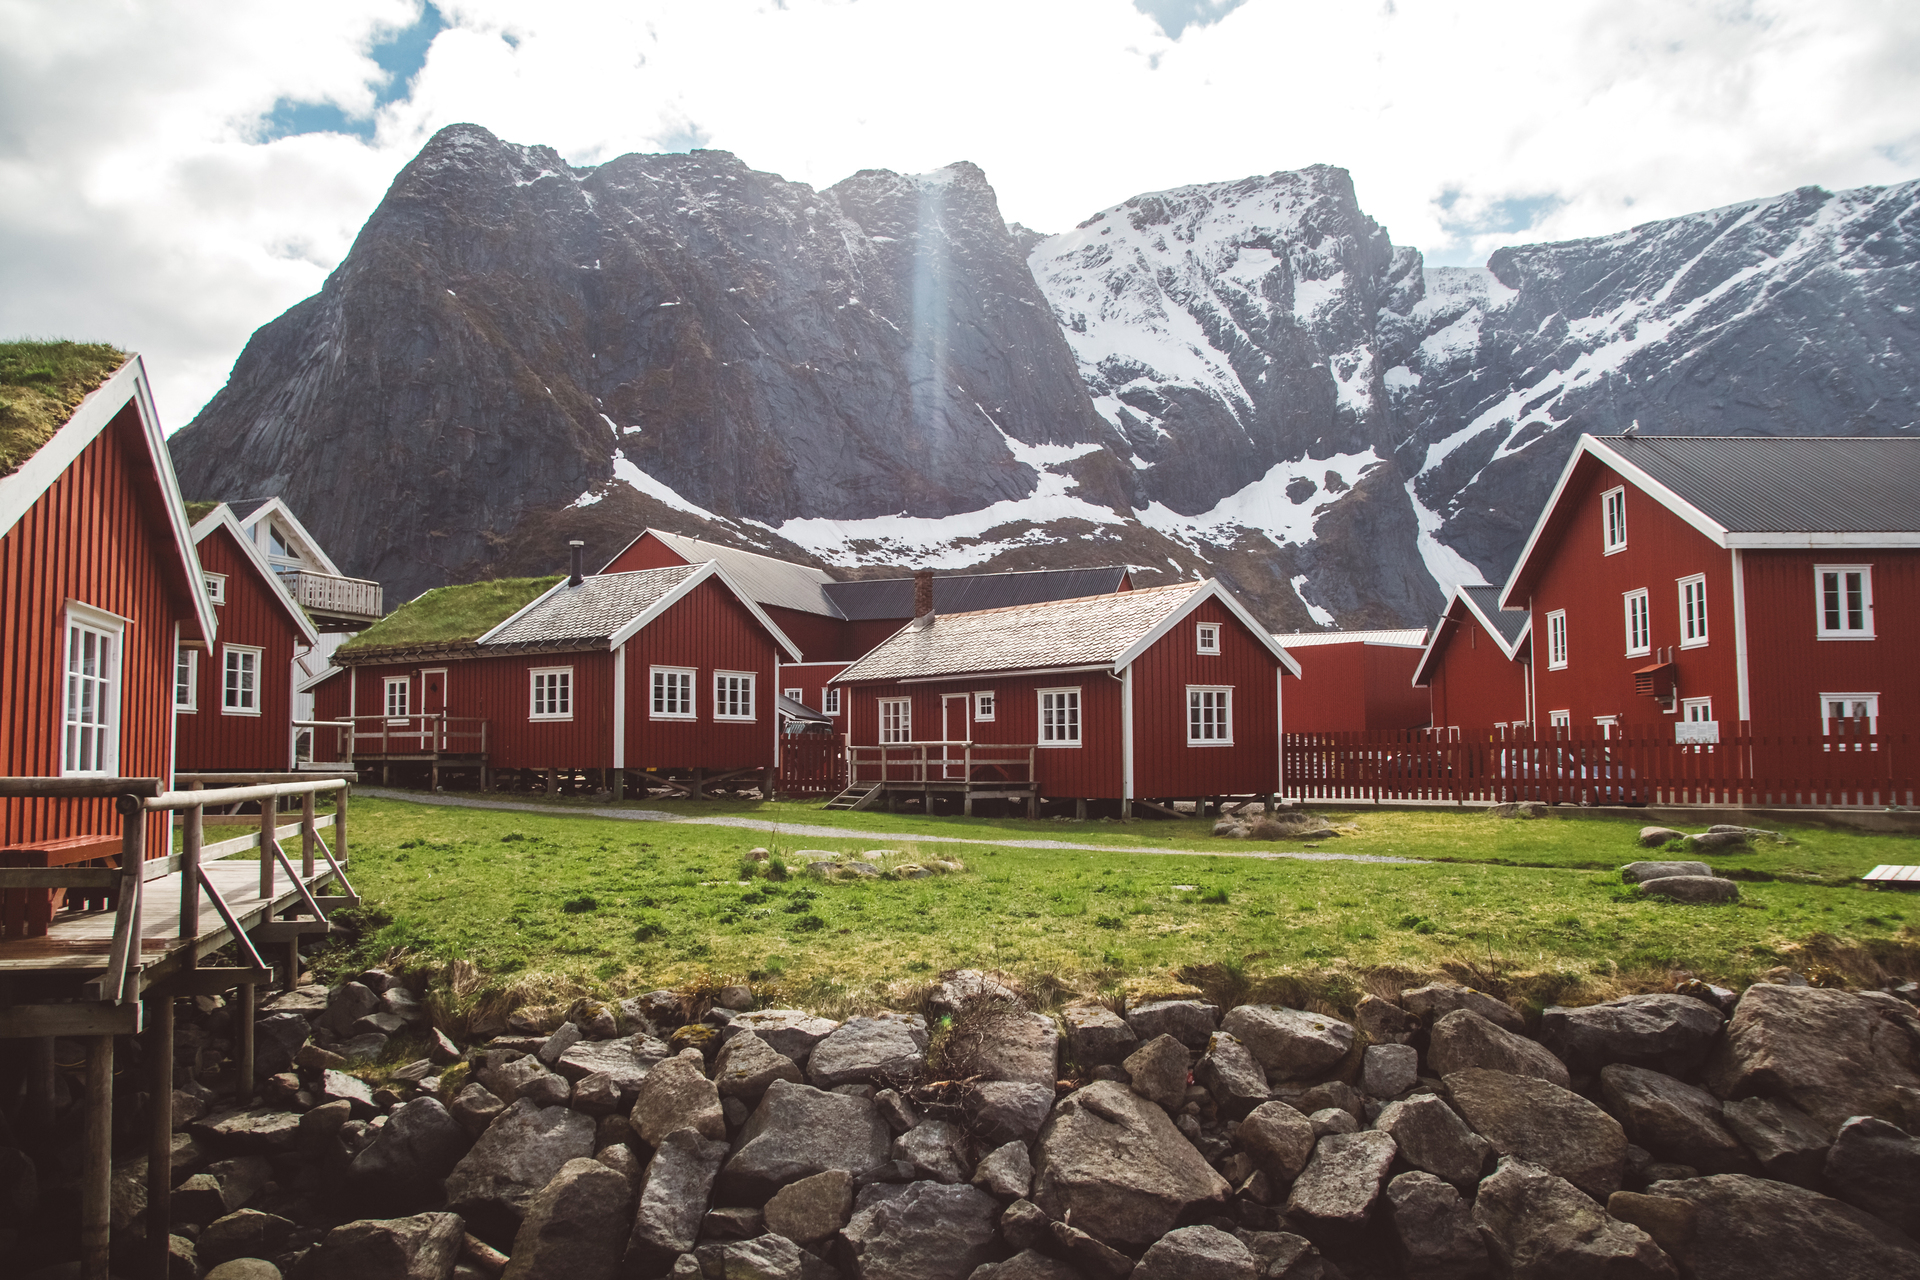 Malowniczy krajobraz Norwegii z charakterystycznymi czerwonymi domkami i górami w tle